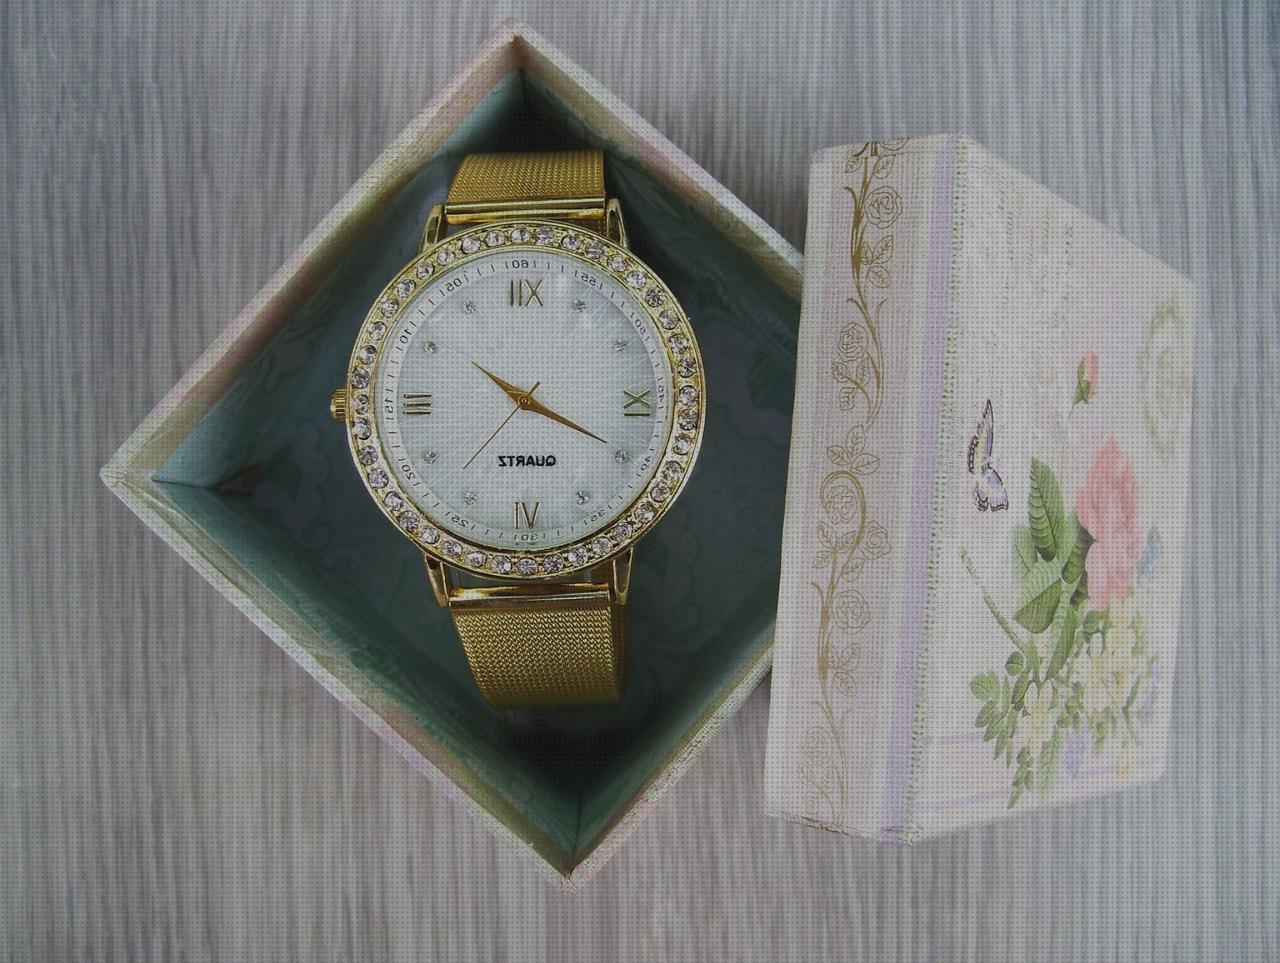 Las mejores marcas de relojes bolsillo antiguosn baratos relojes decathlon baratos relojes baratos cajas de relojes de marca baratos